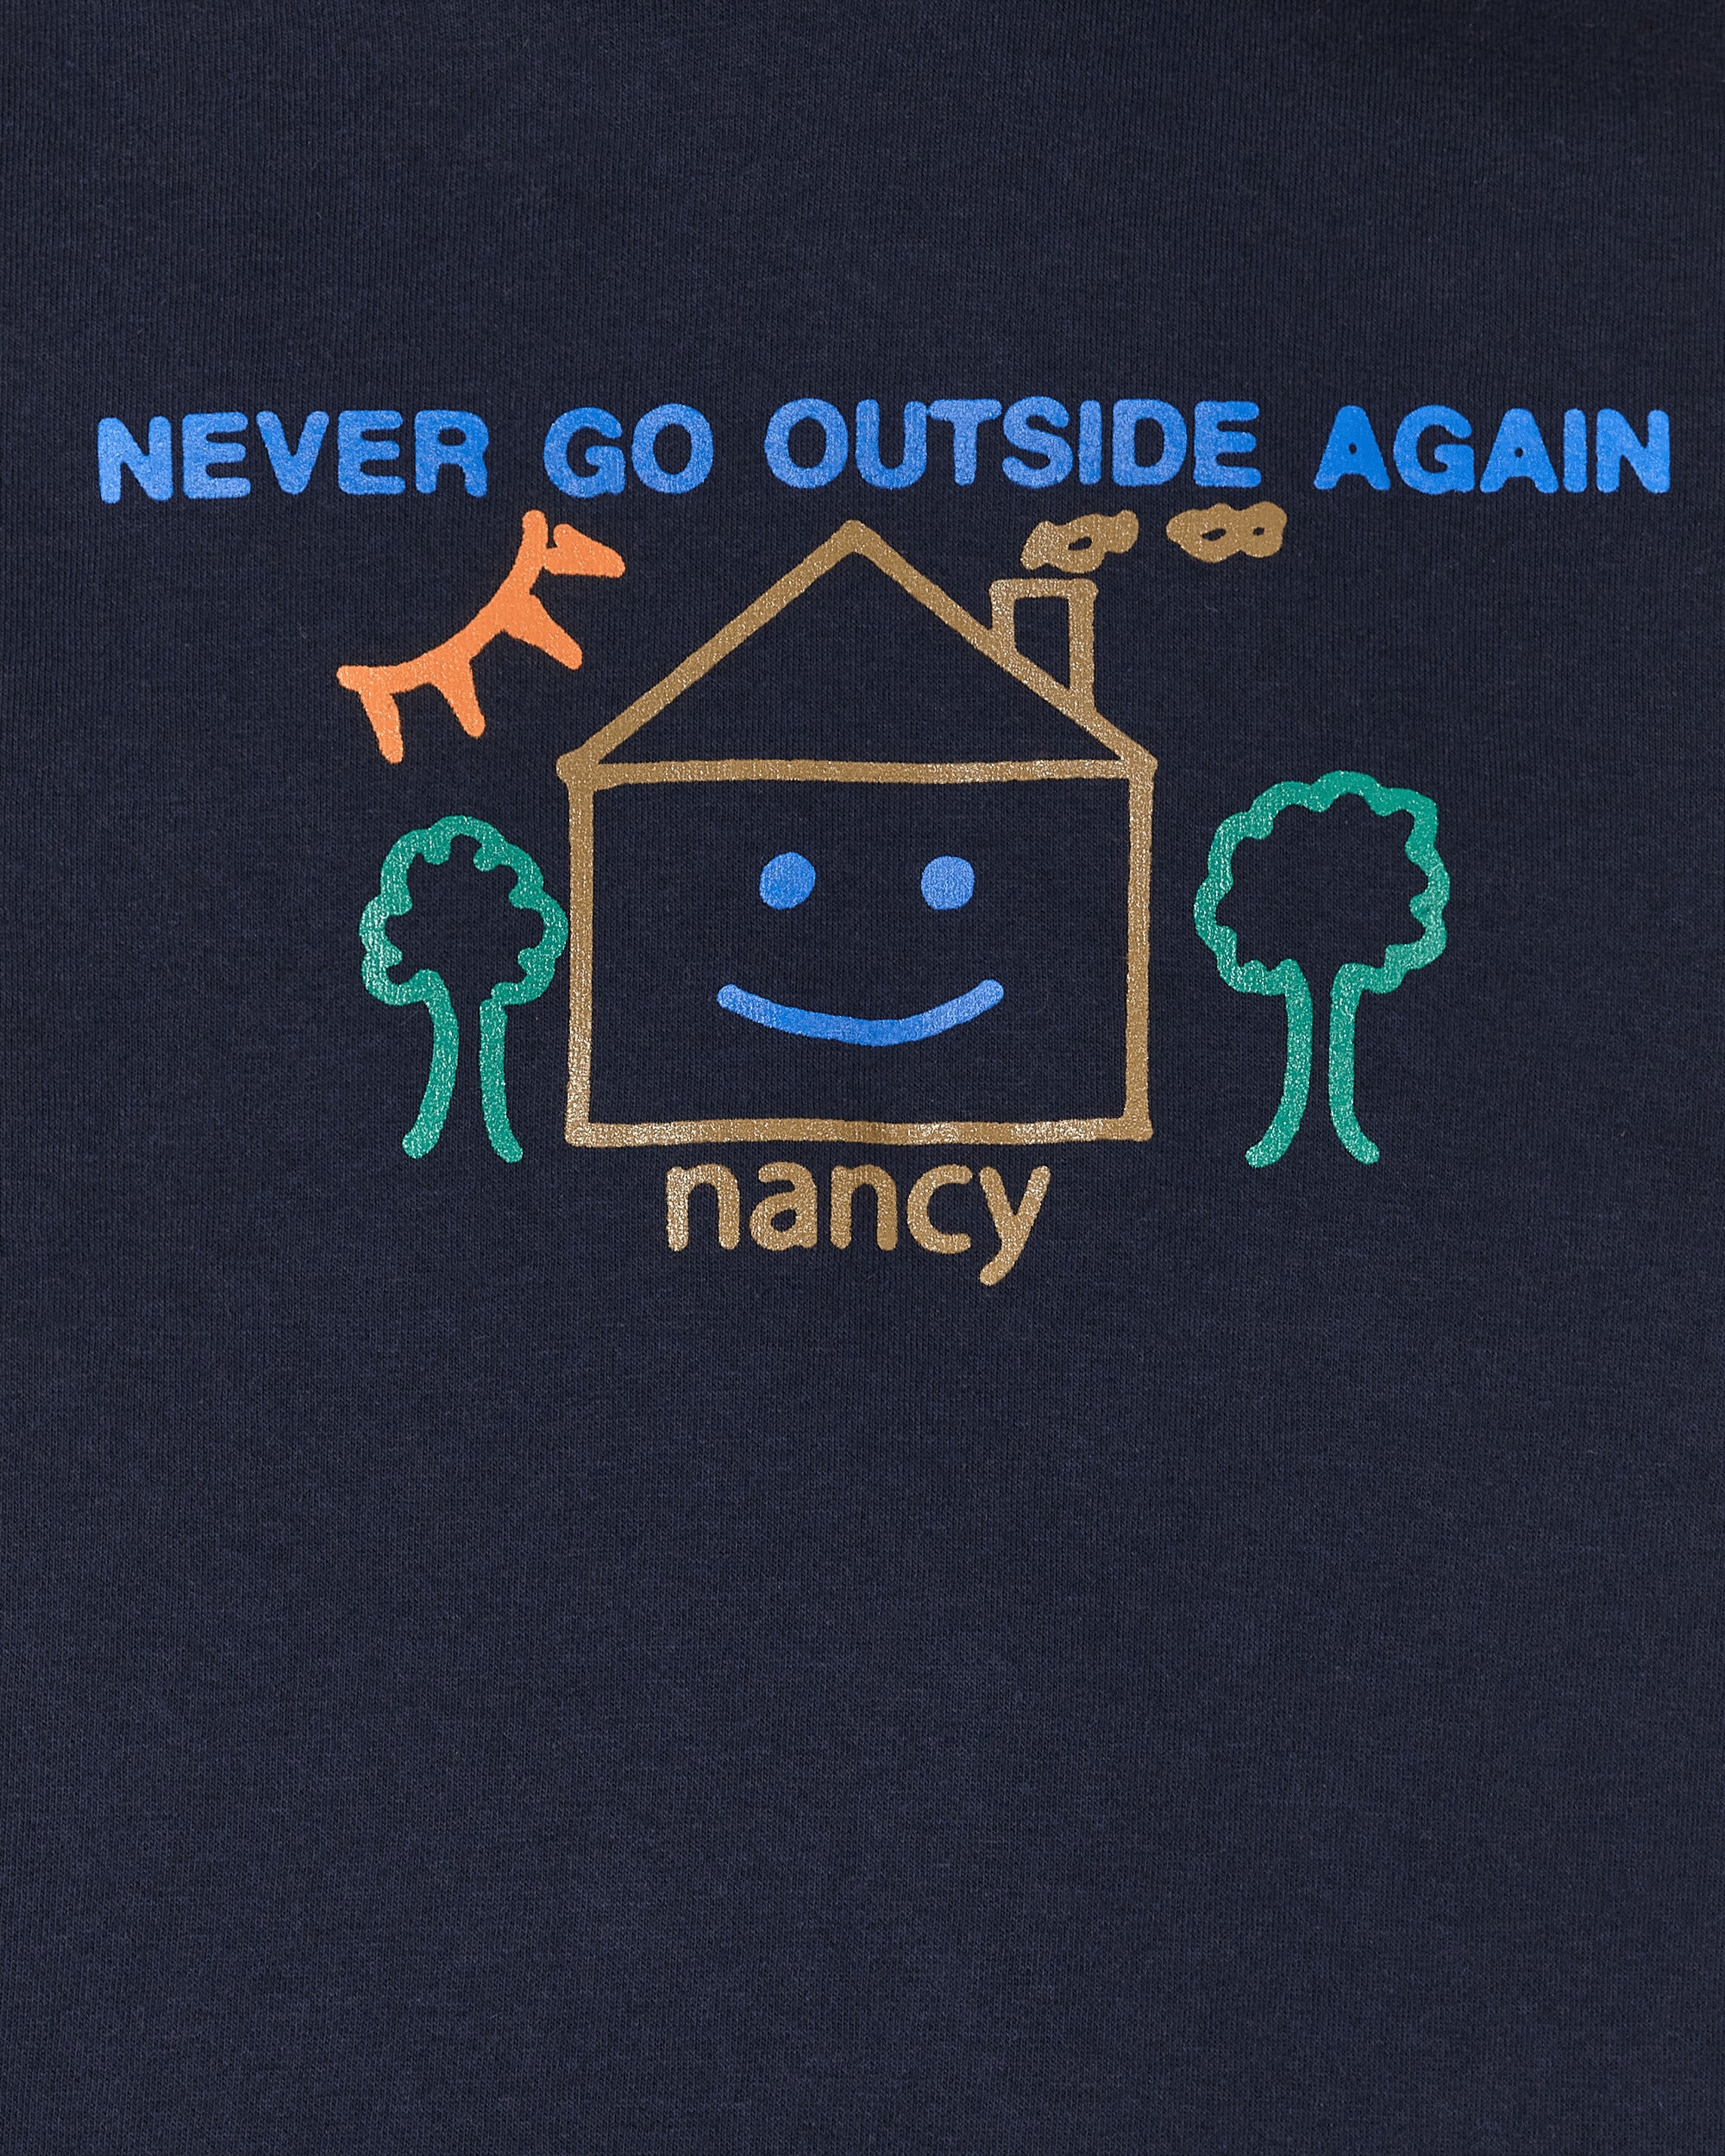 Nancy Never Go Outside Again Hoody Navy Sweatshirts Hoodies NA068 001